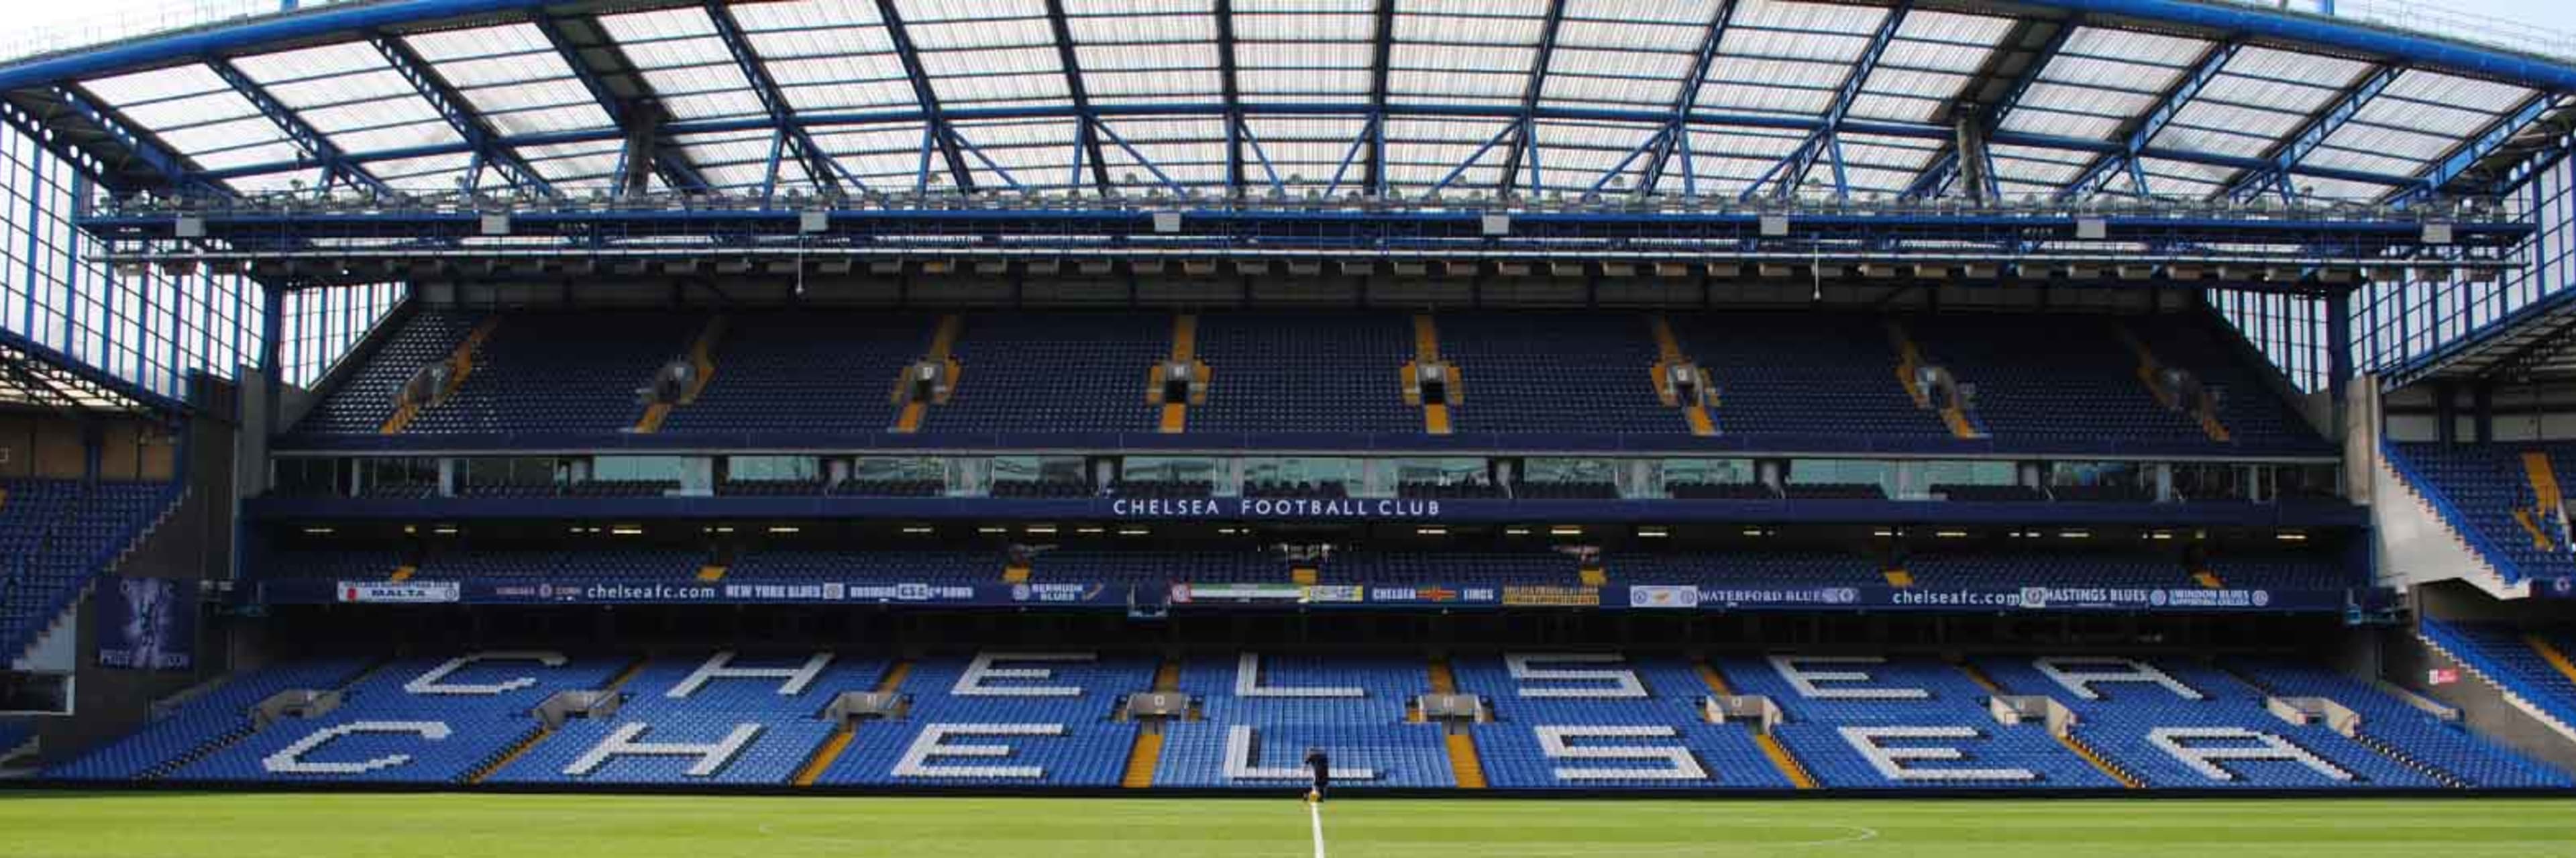 Chelsea FC Stadium Tour banner